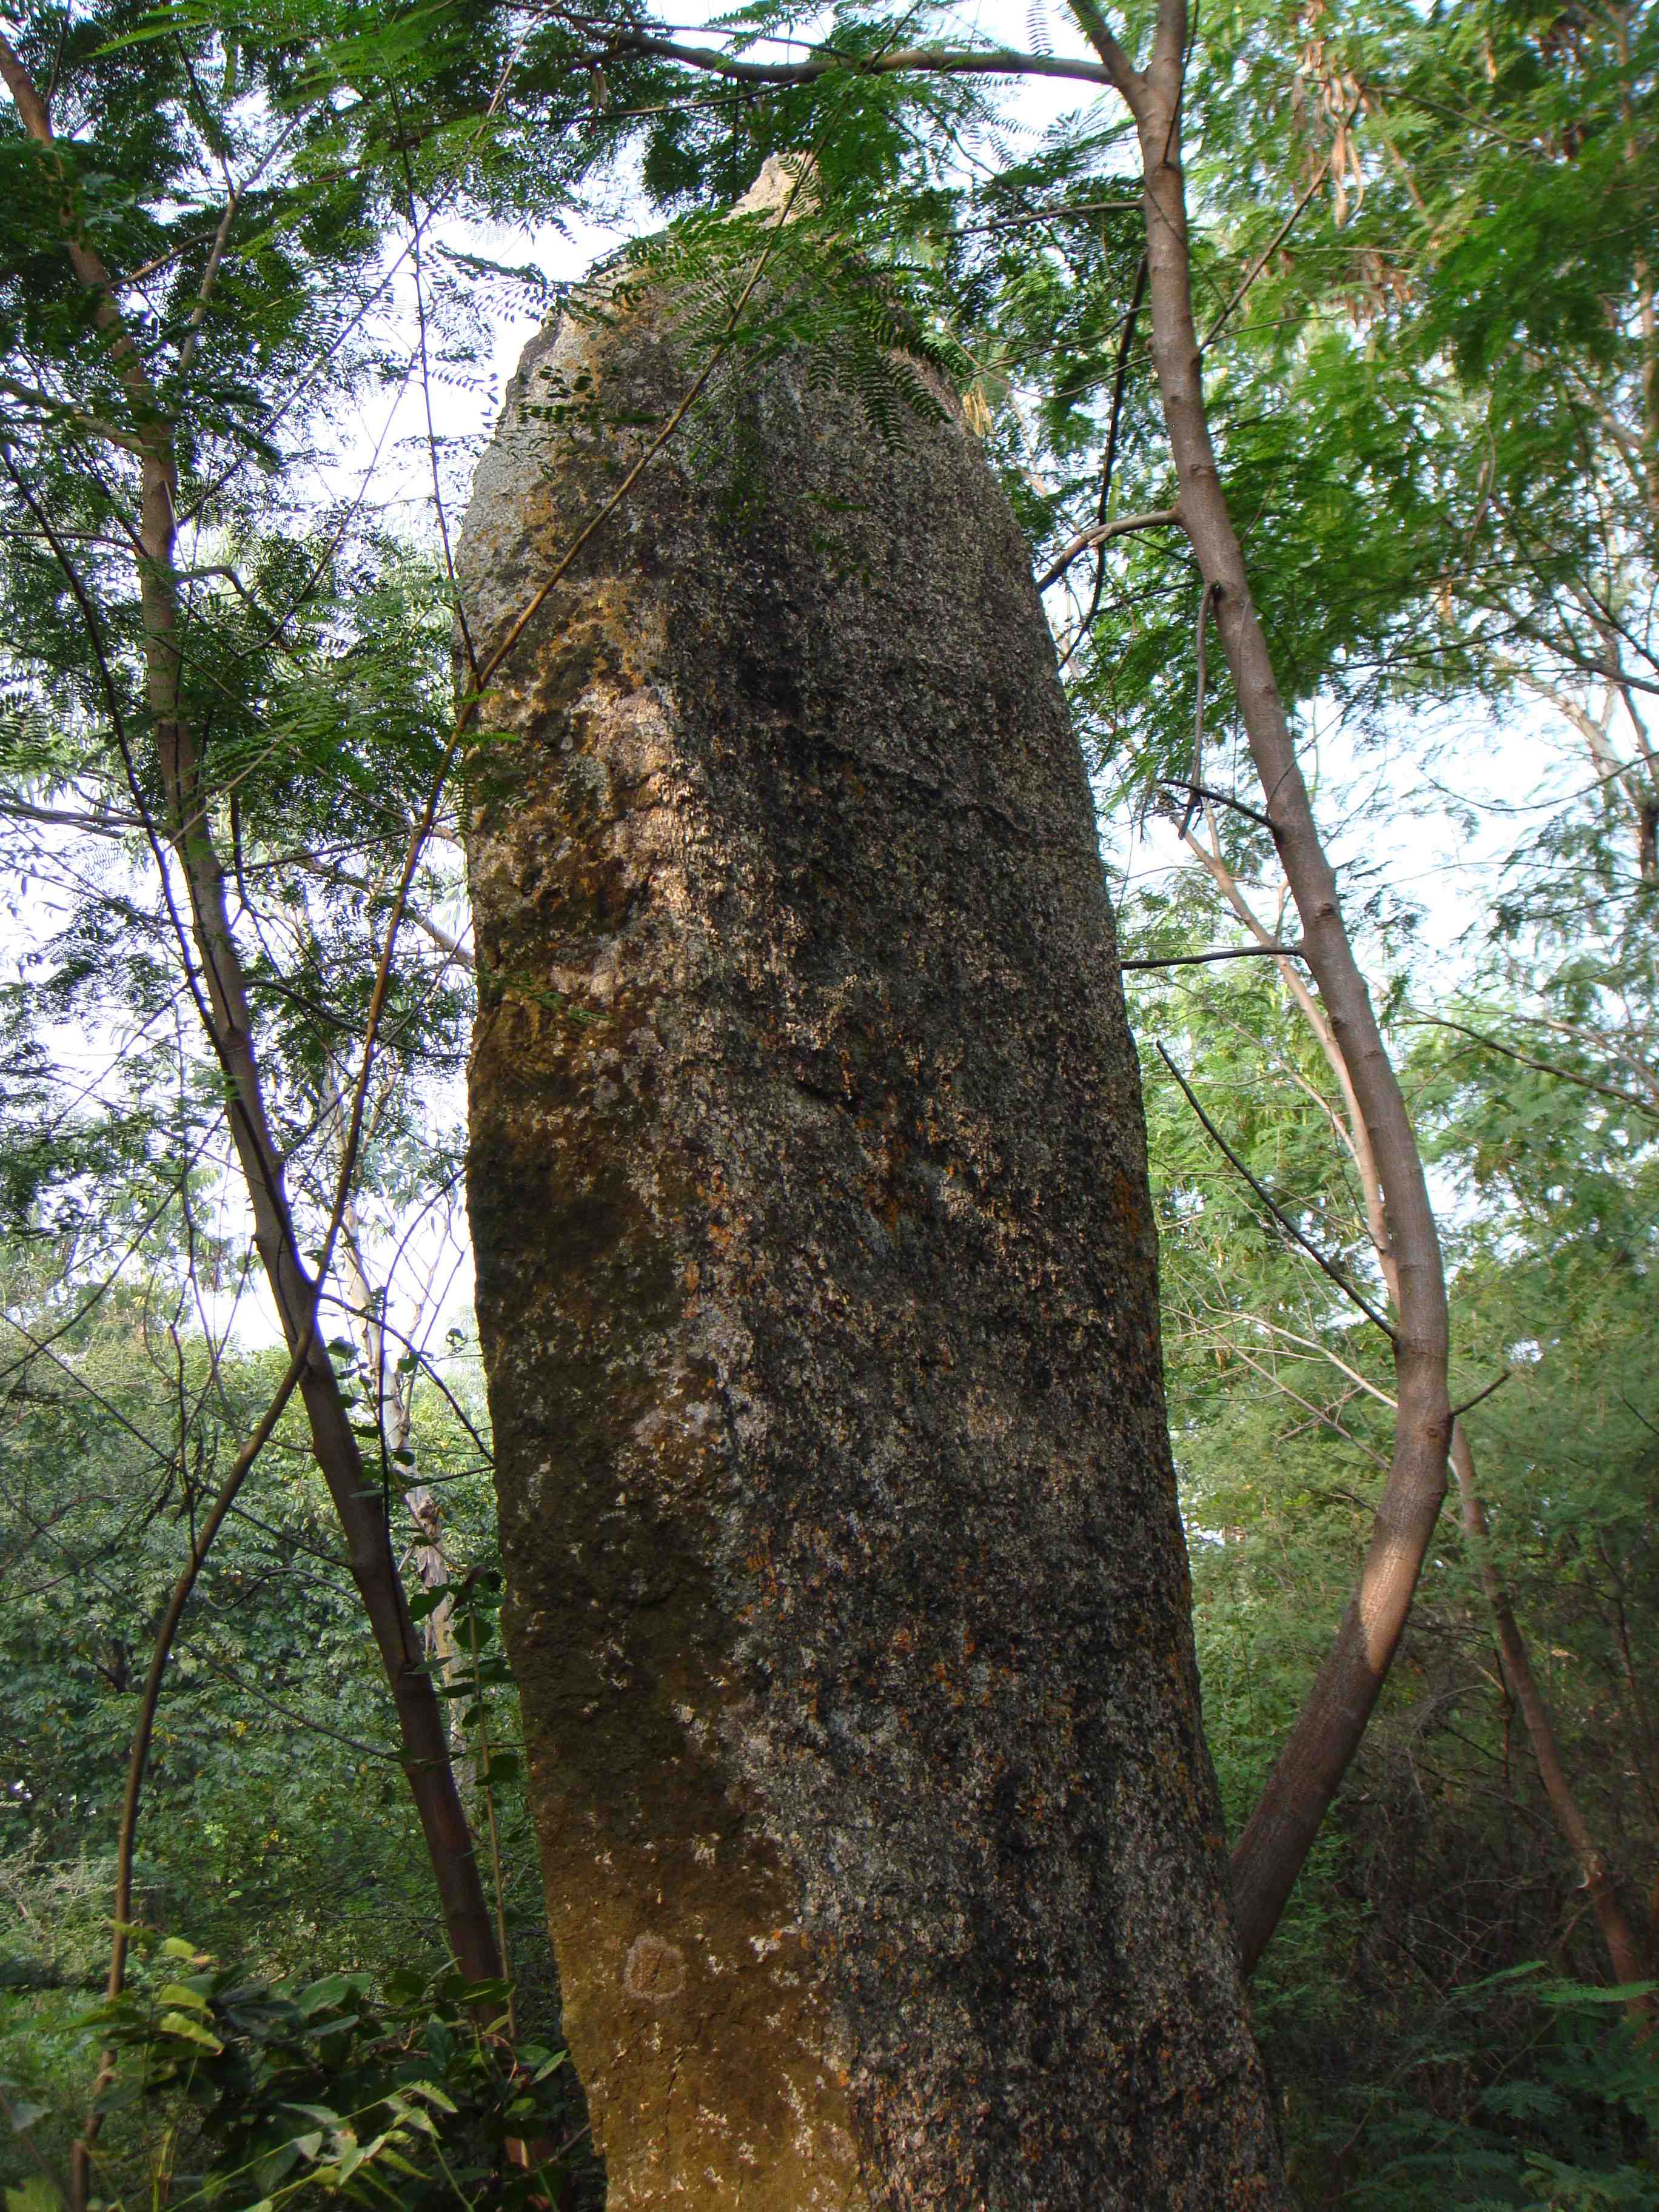 Менгиры - каменные столбы